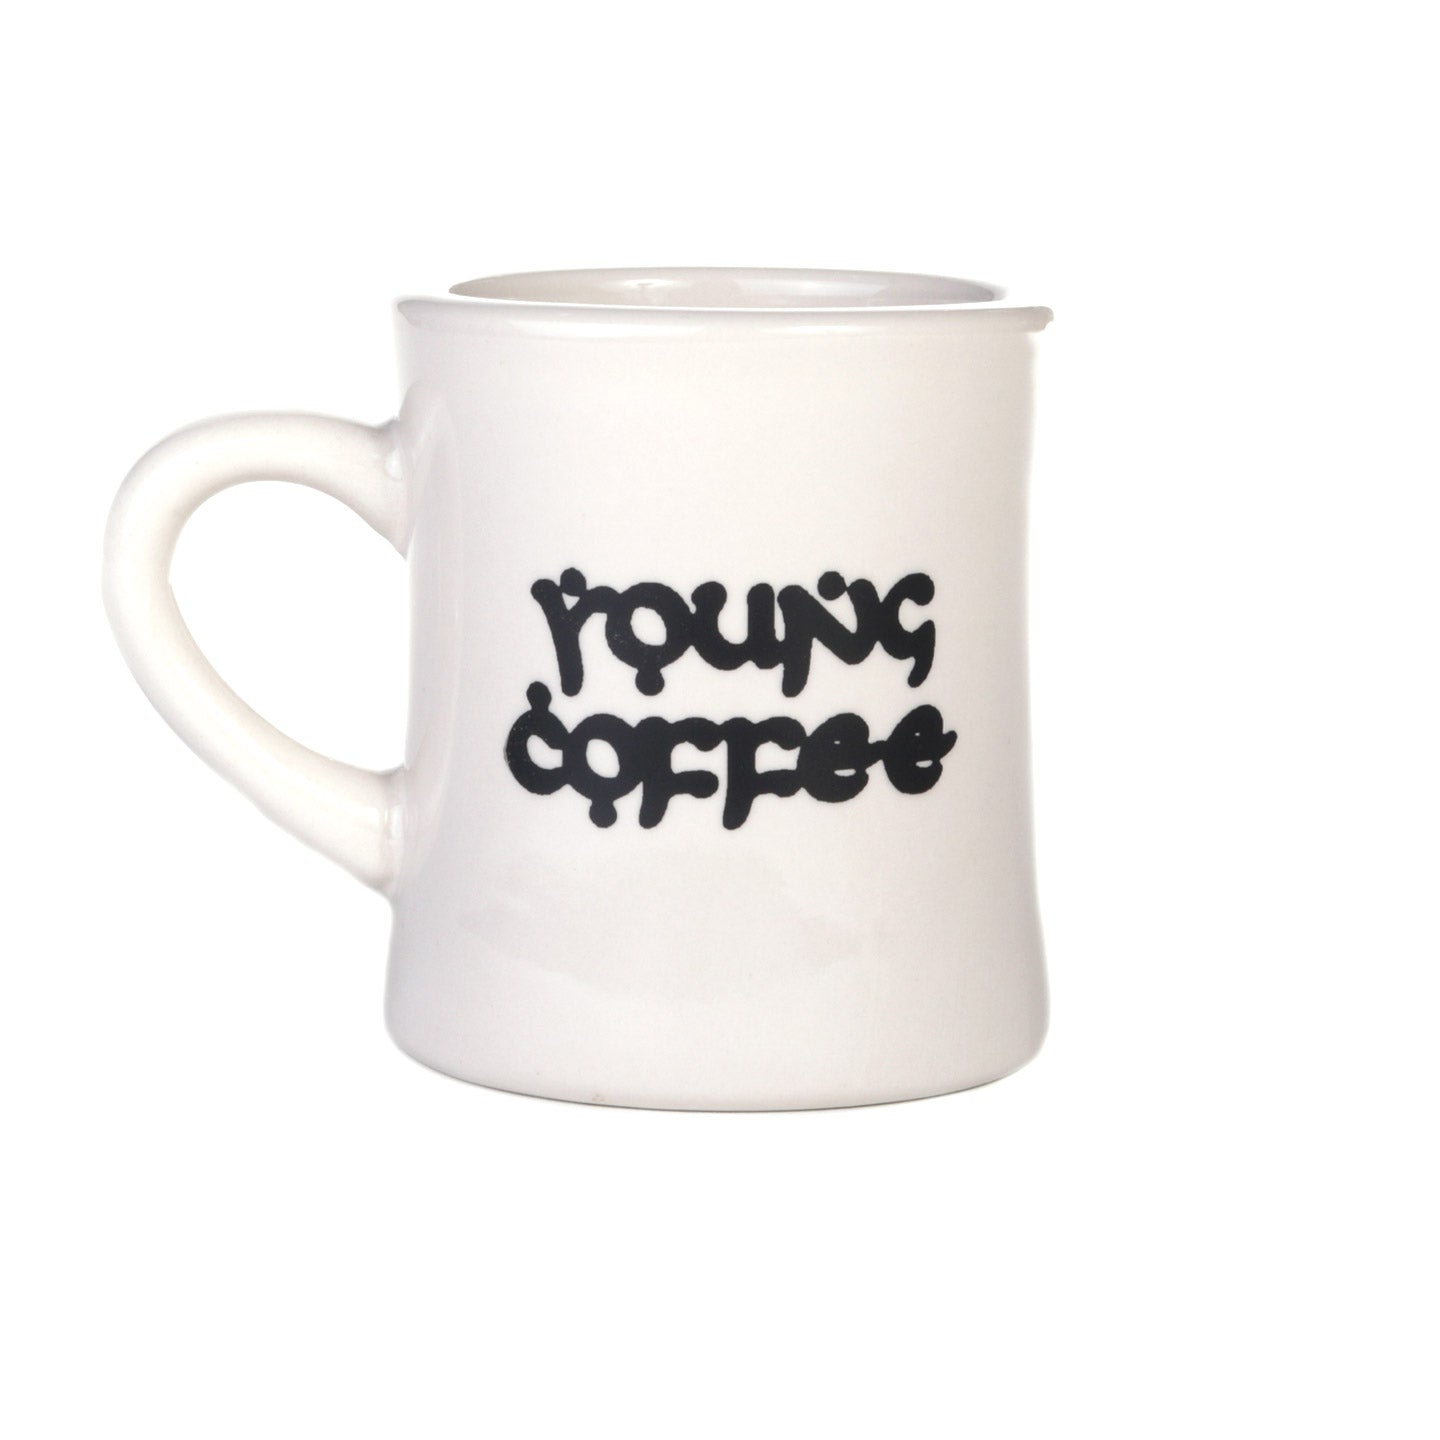 YOUNG COFFEE MUG